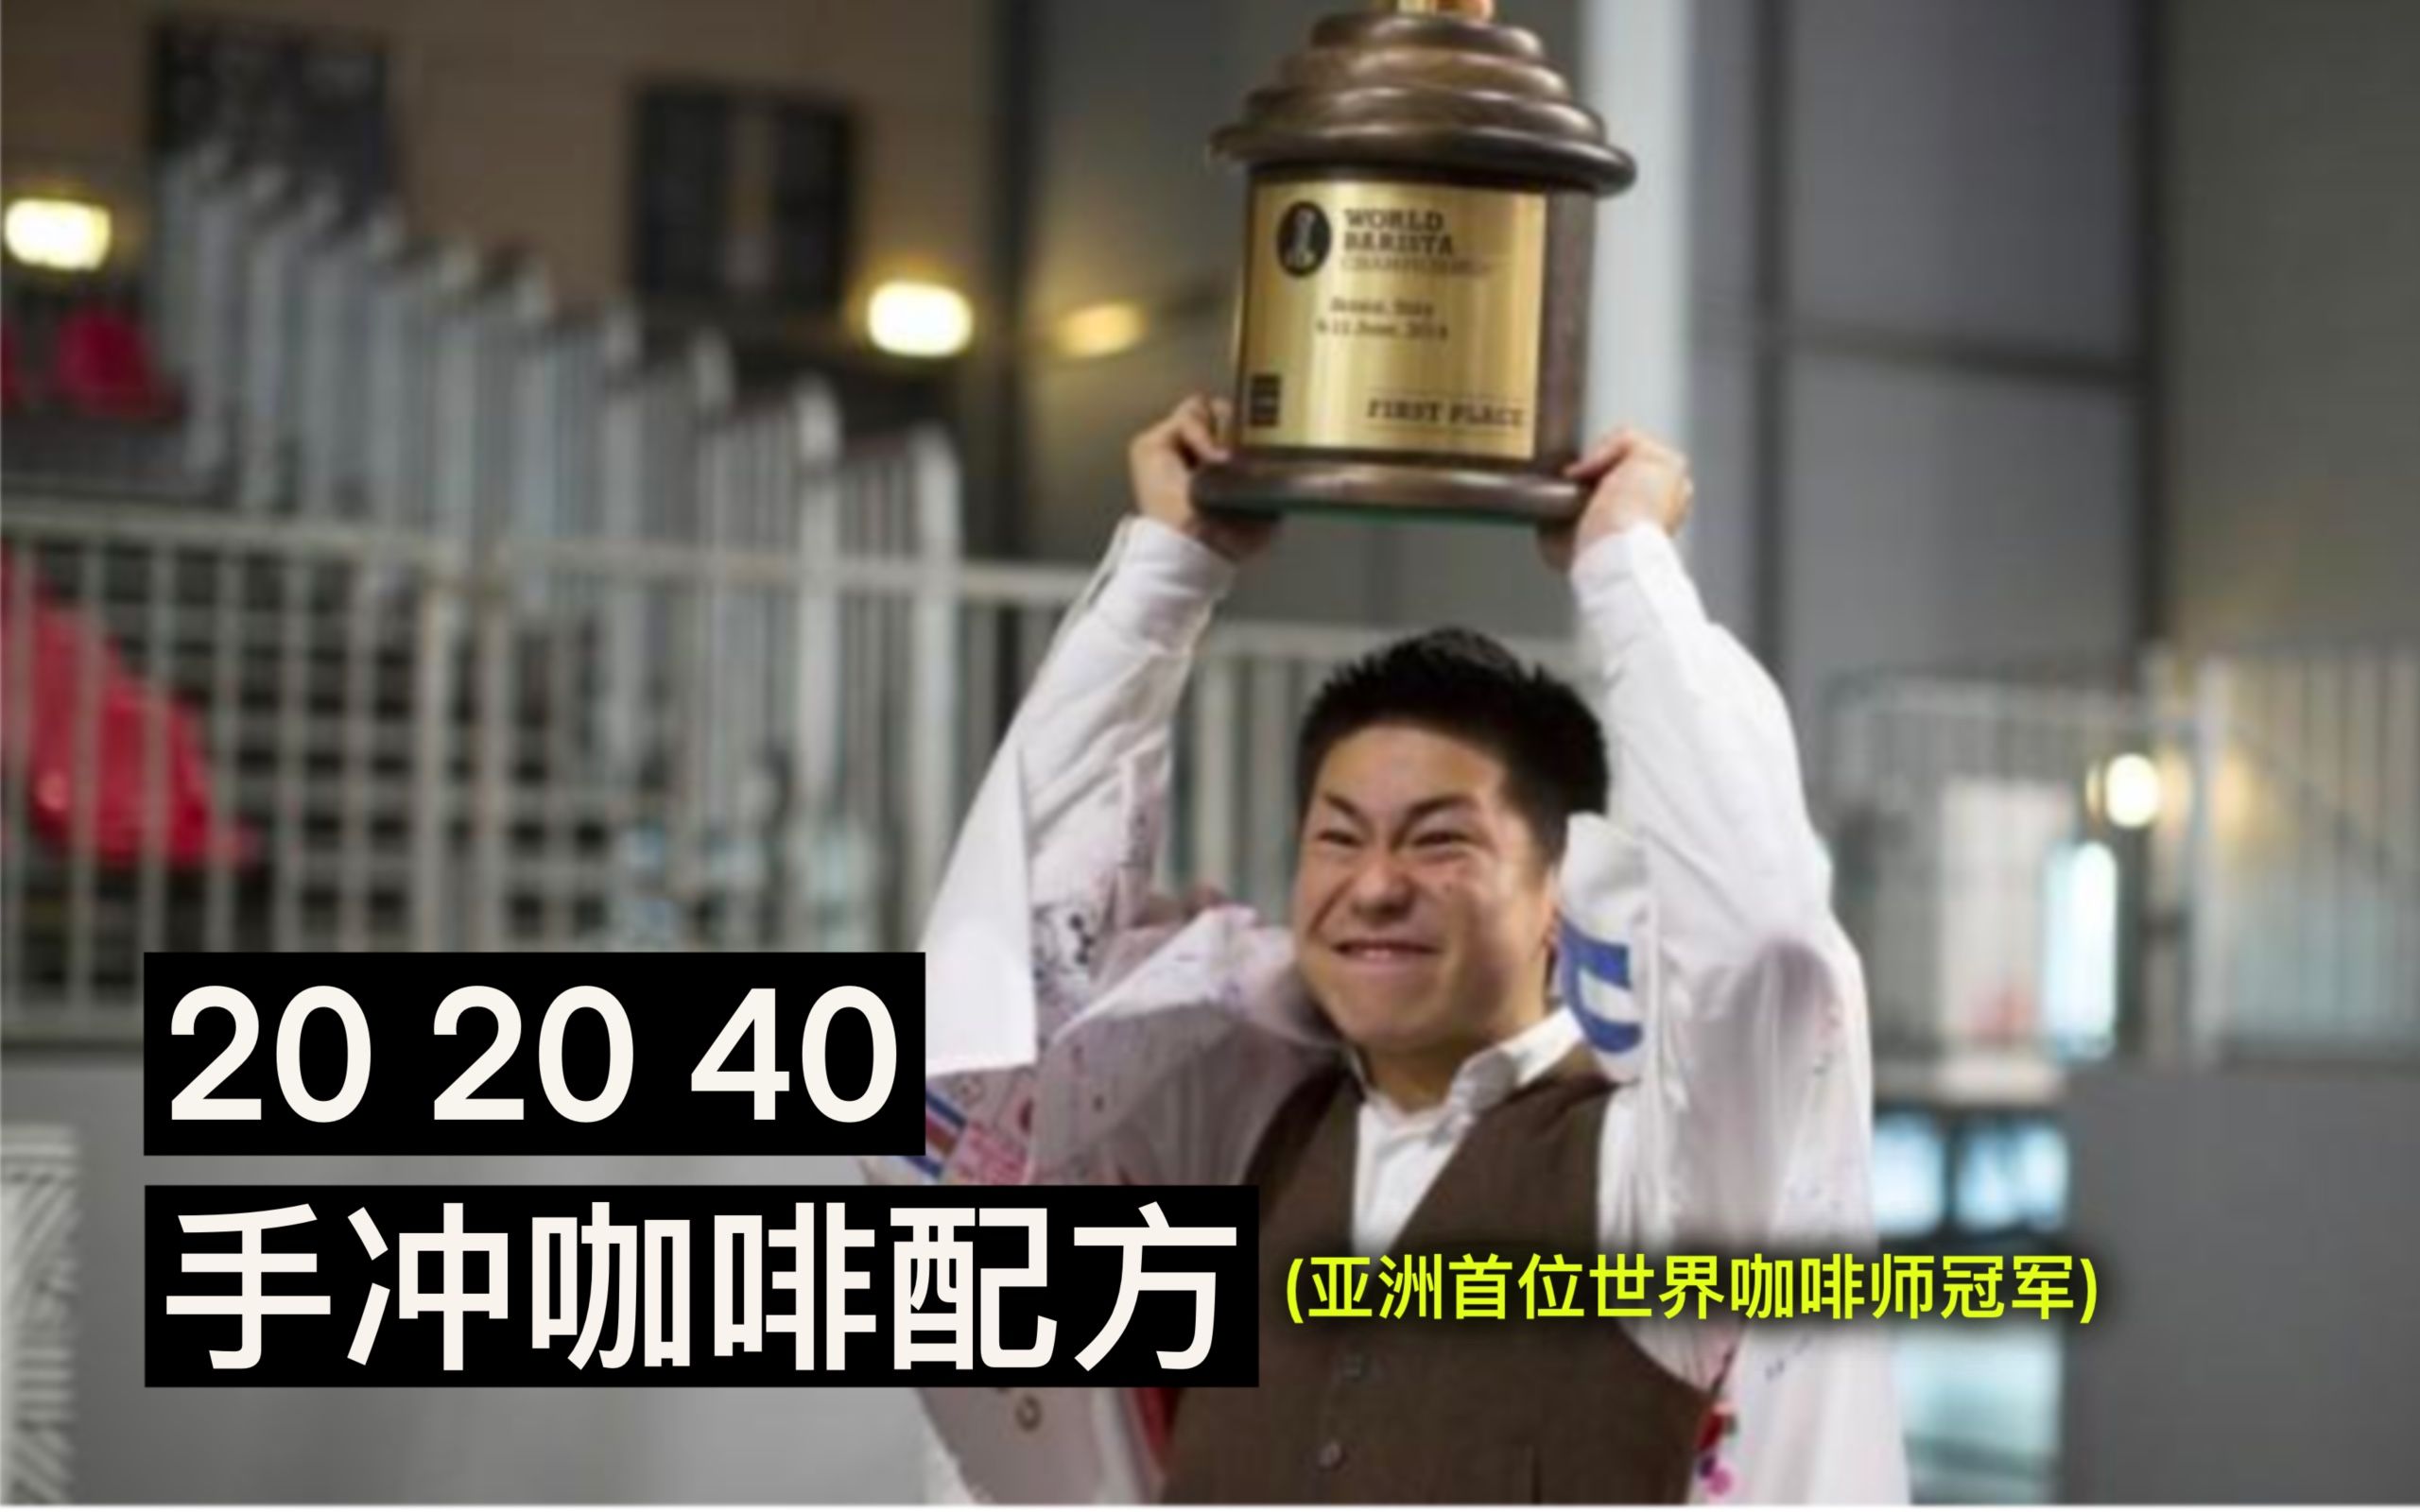 亚洲首位世界咖啡师大赛冠军的手冲配方大公开